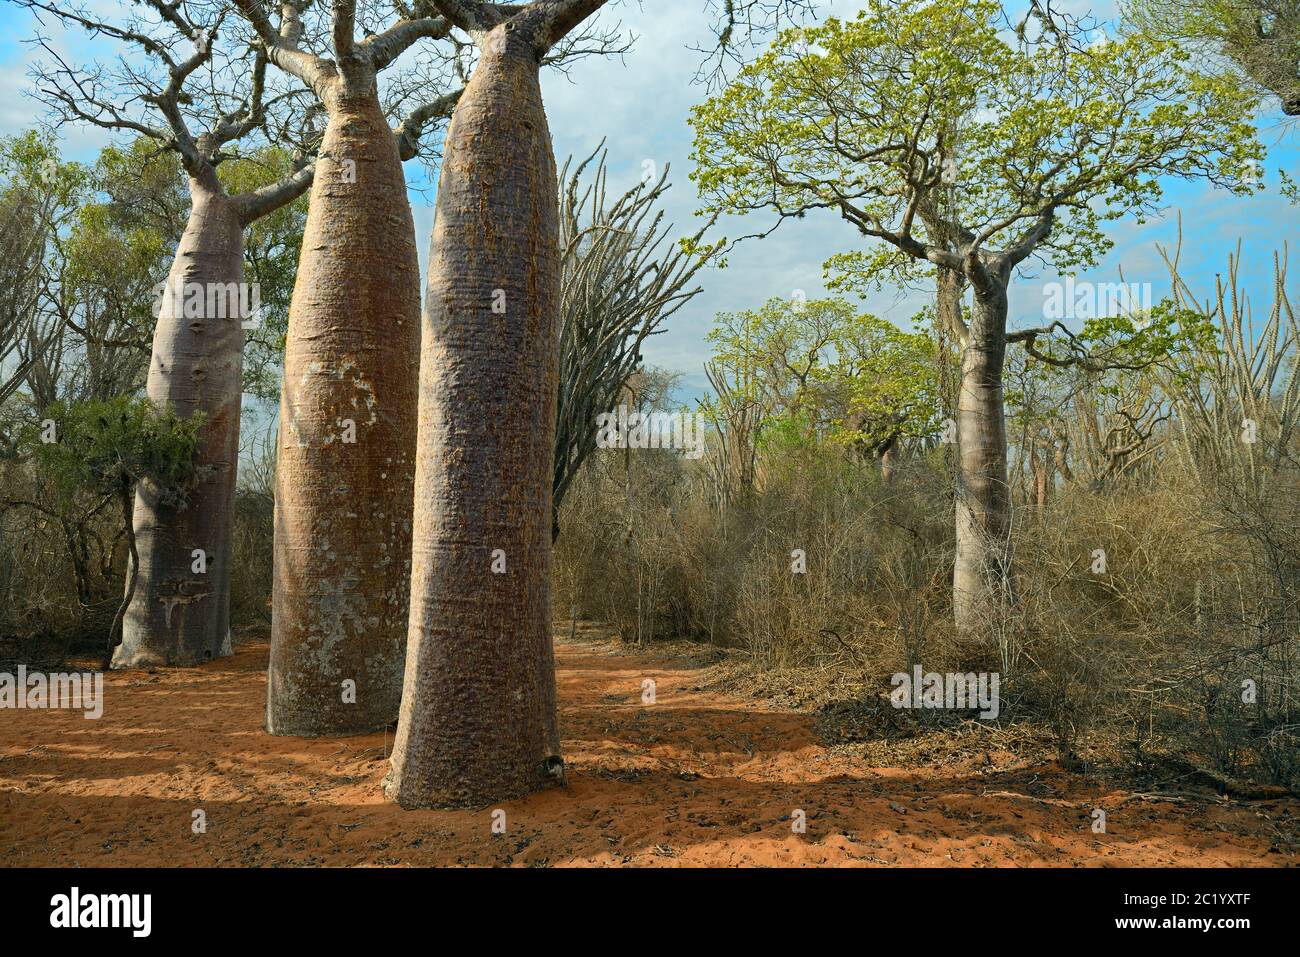 Madagaskar stacheligen Wald ist einen einmaligen Lebensraum zu Madagaskar mit praktisch jeder Komponente sowohl pflanzlichen und tierischen Arten endemisch auf der Insel. Stockfoto